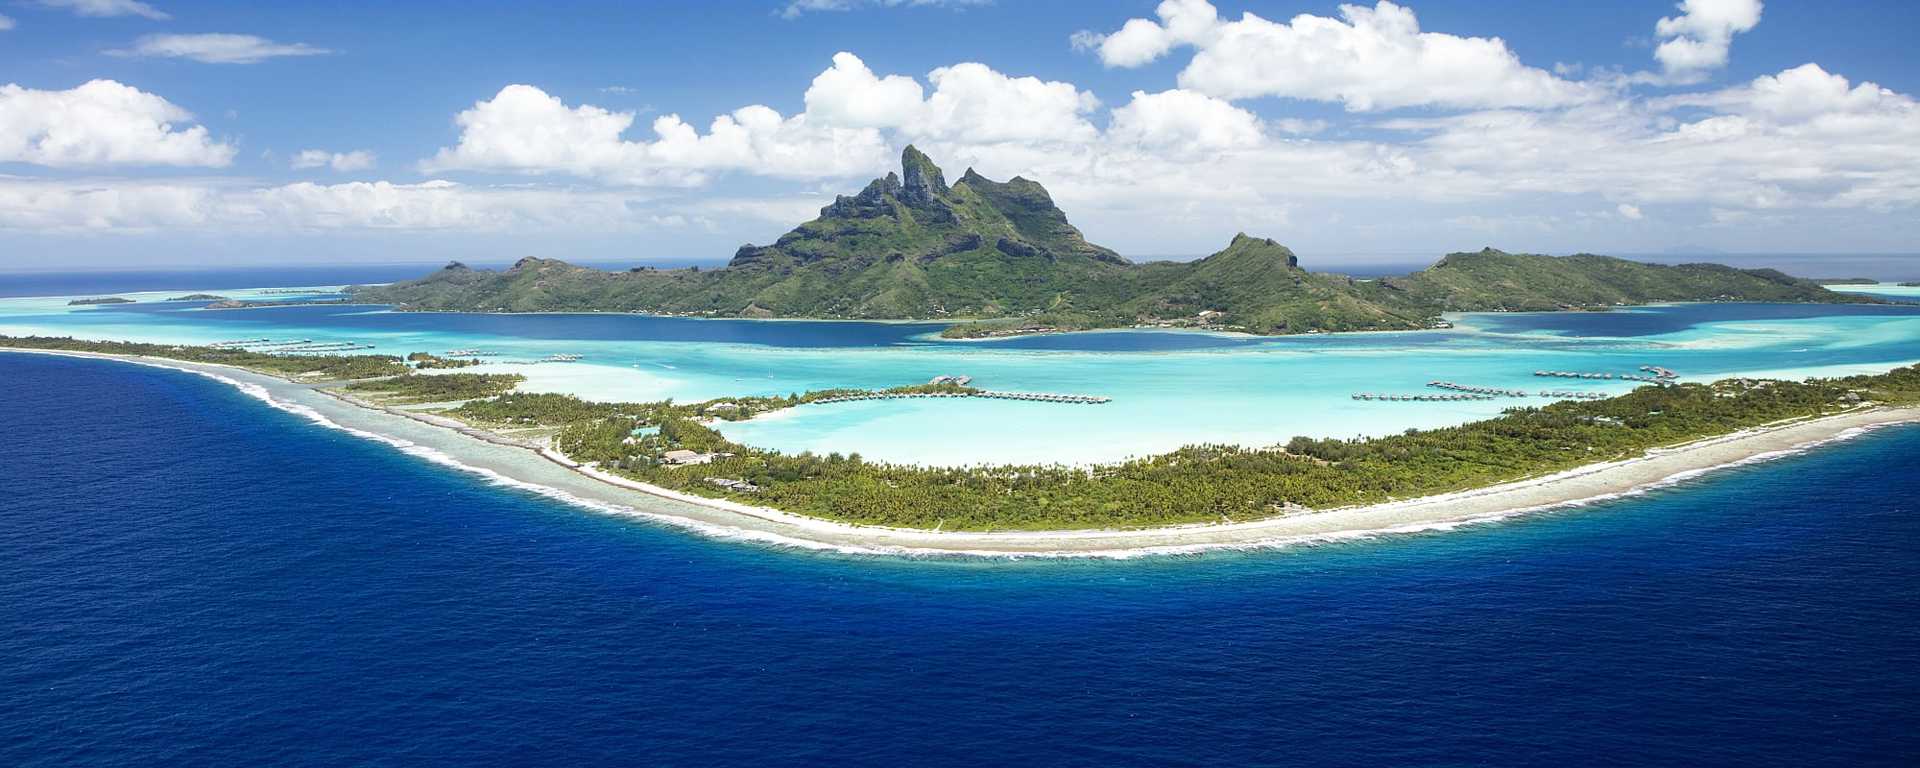 Aerial view of Bora Bora in French Polynesia